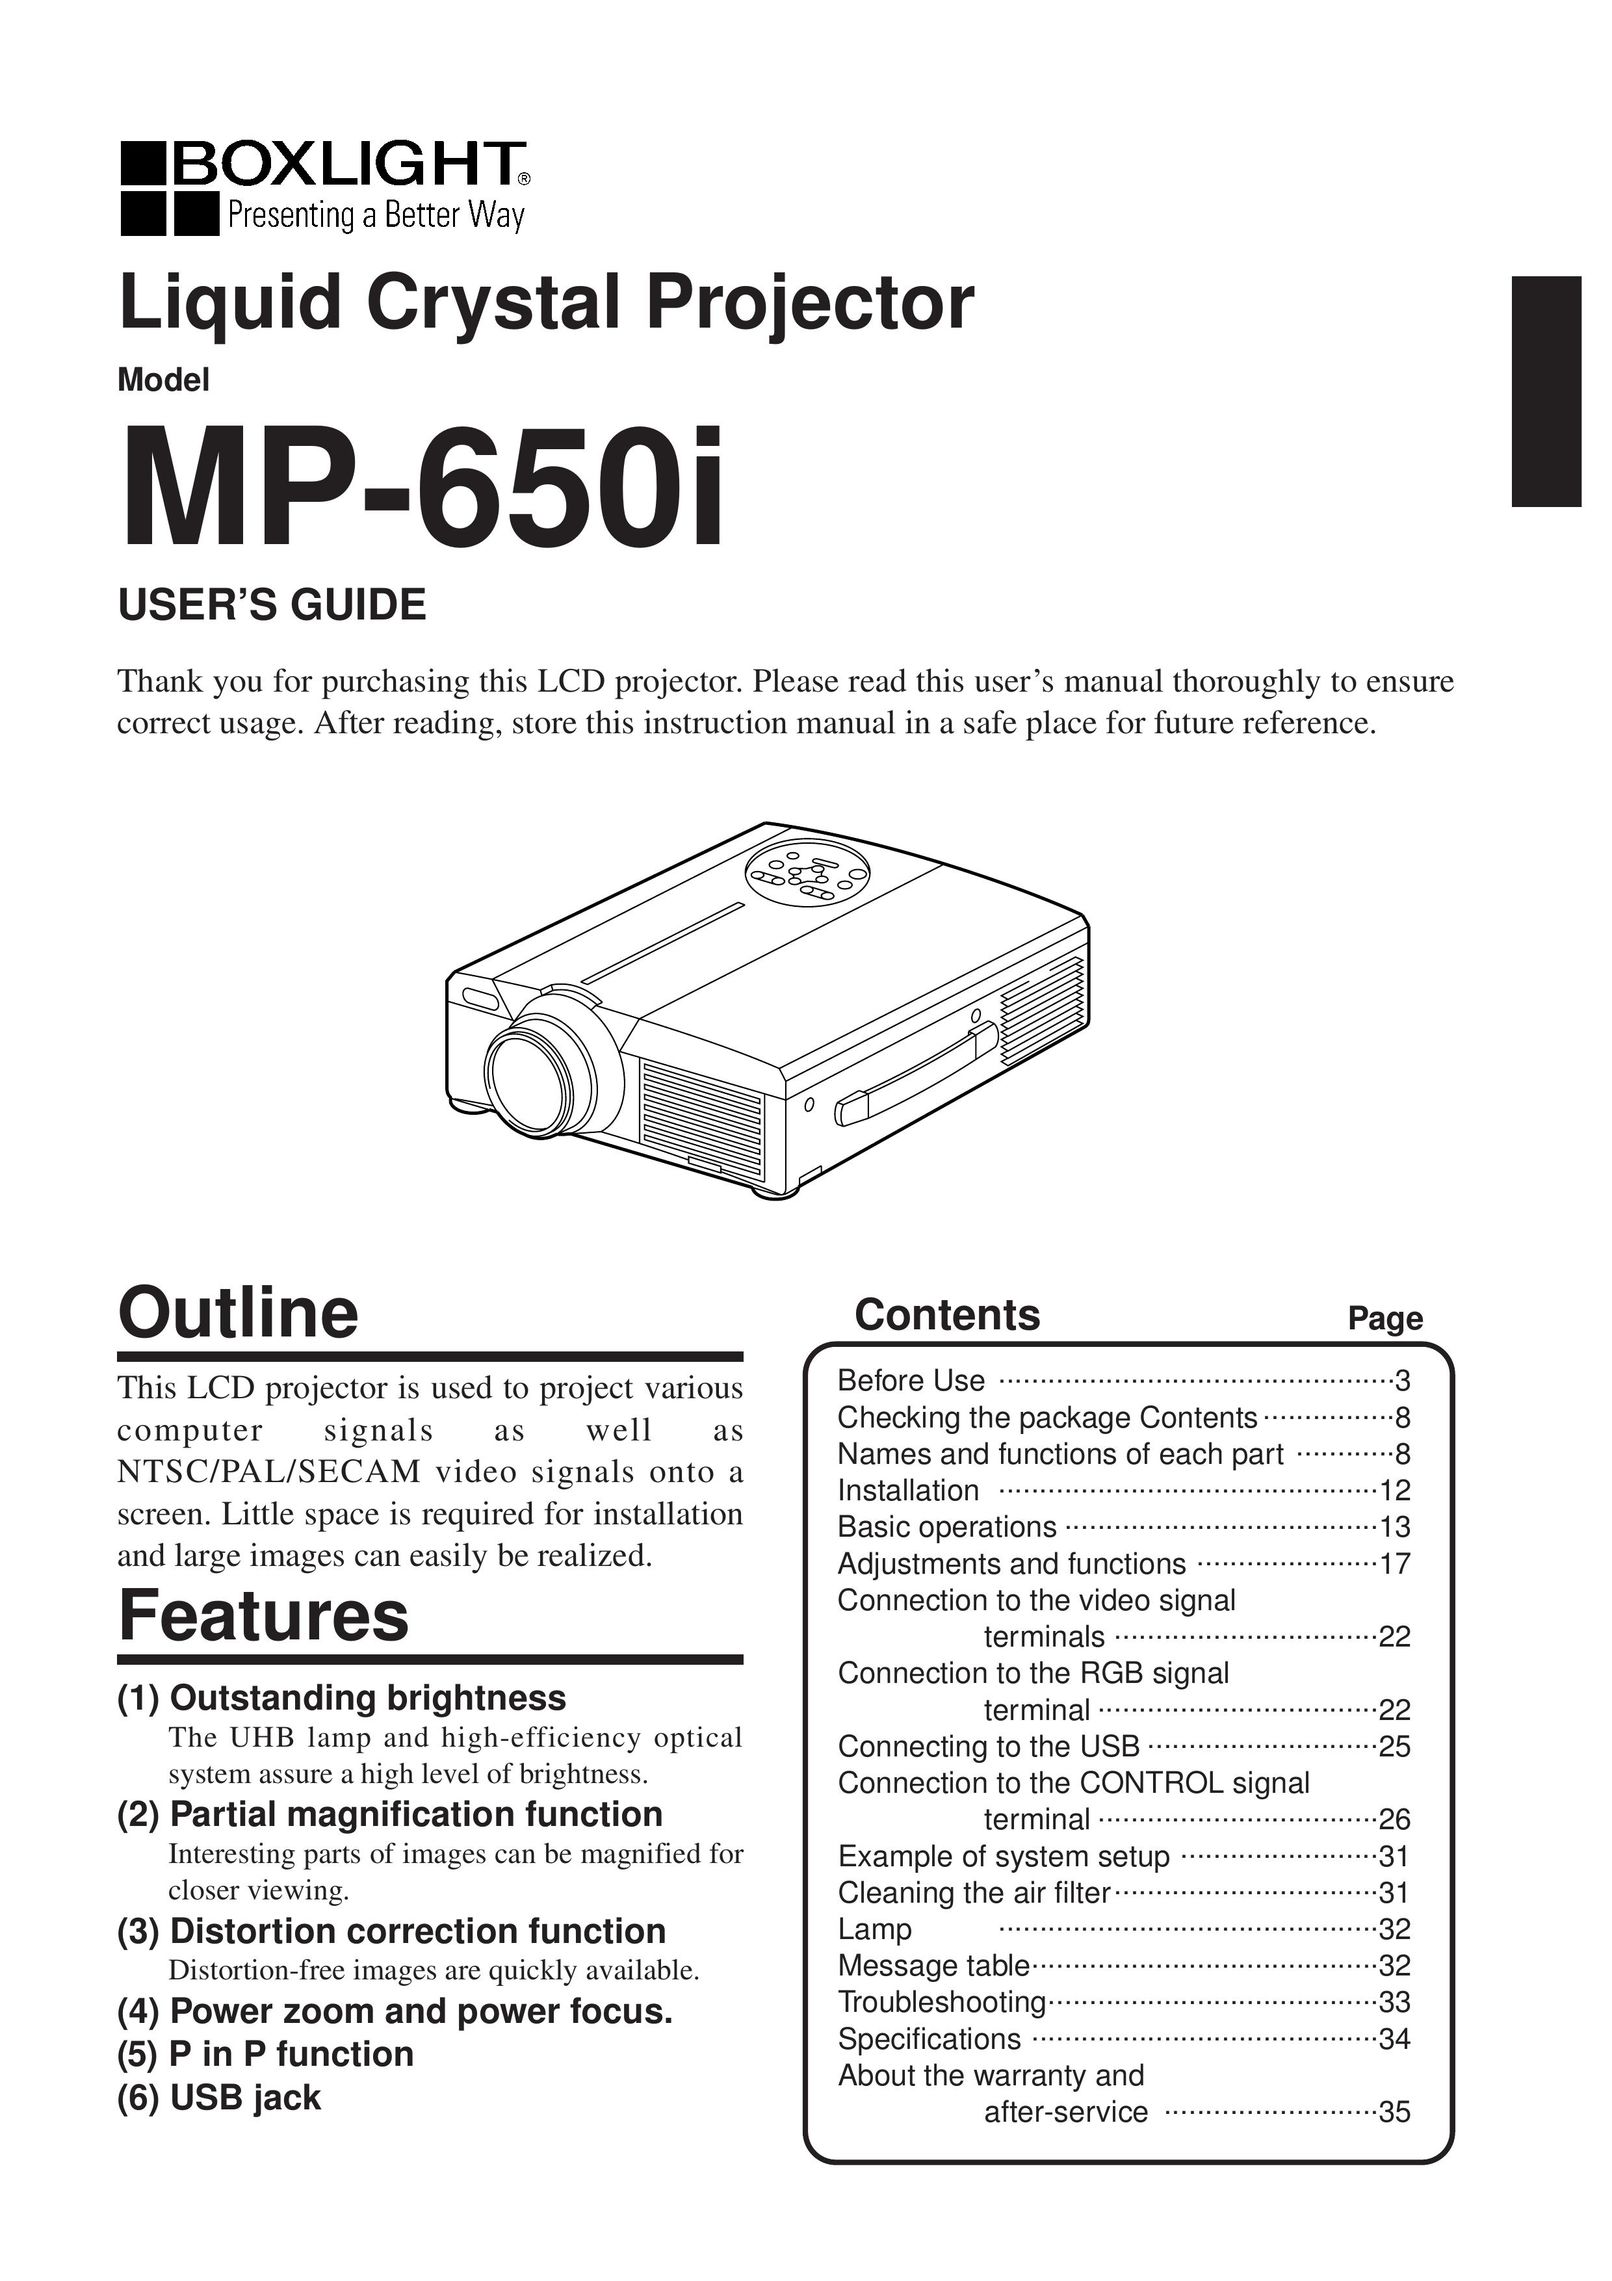 BOXLIGHT MP-650i Projector User Manual